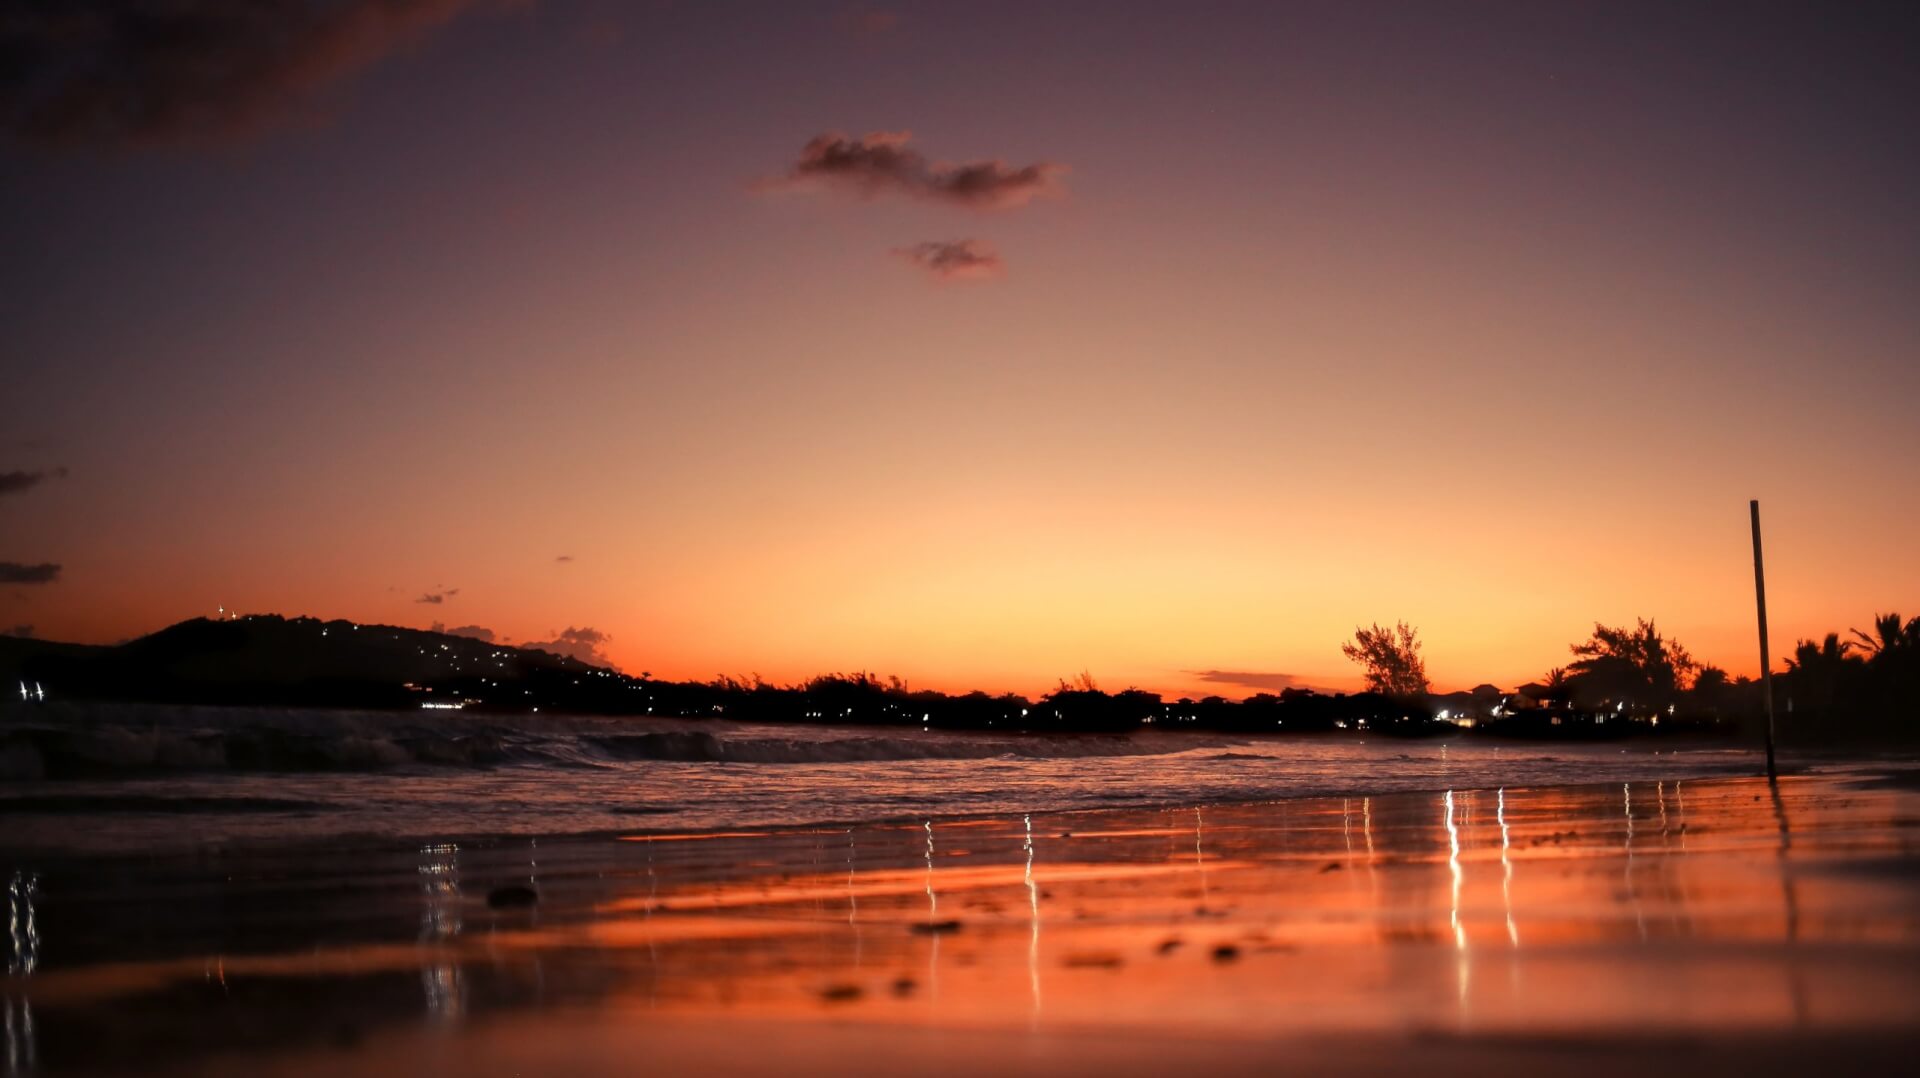 Pôr do sol deixa o céu do litoral de Búzios alaranjado. Imagem disponível em Unsplash.